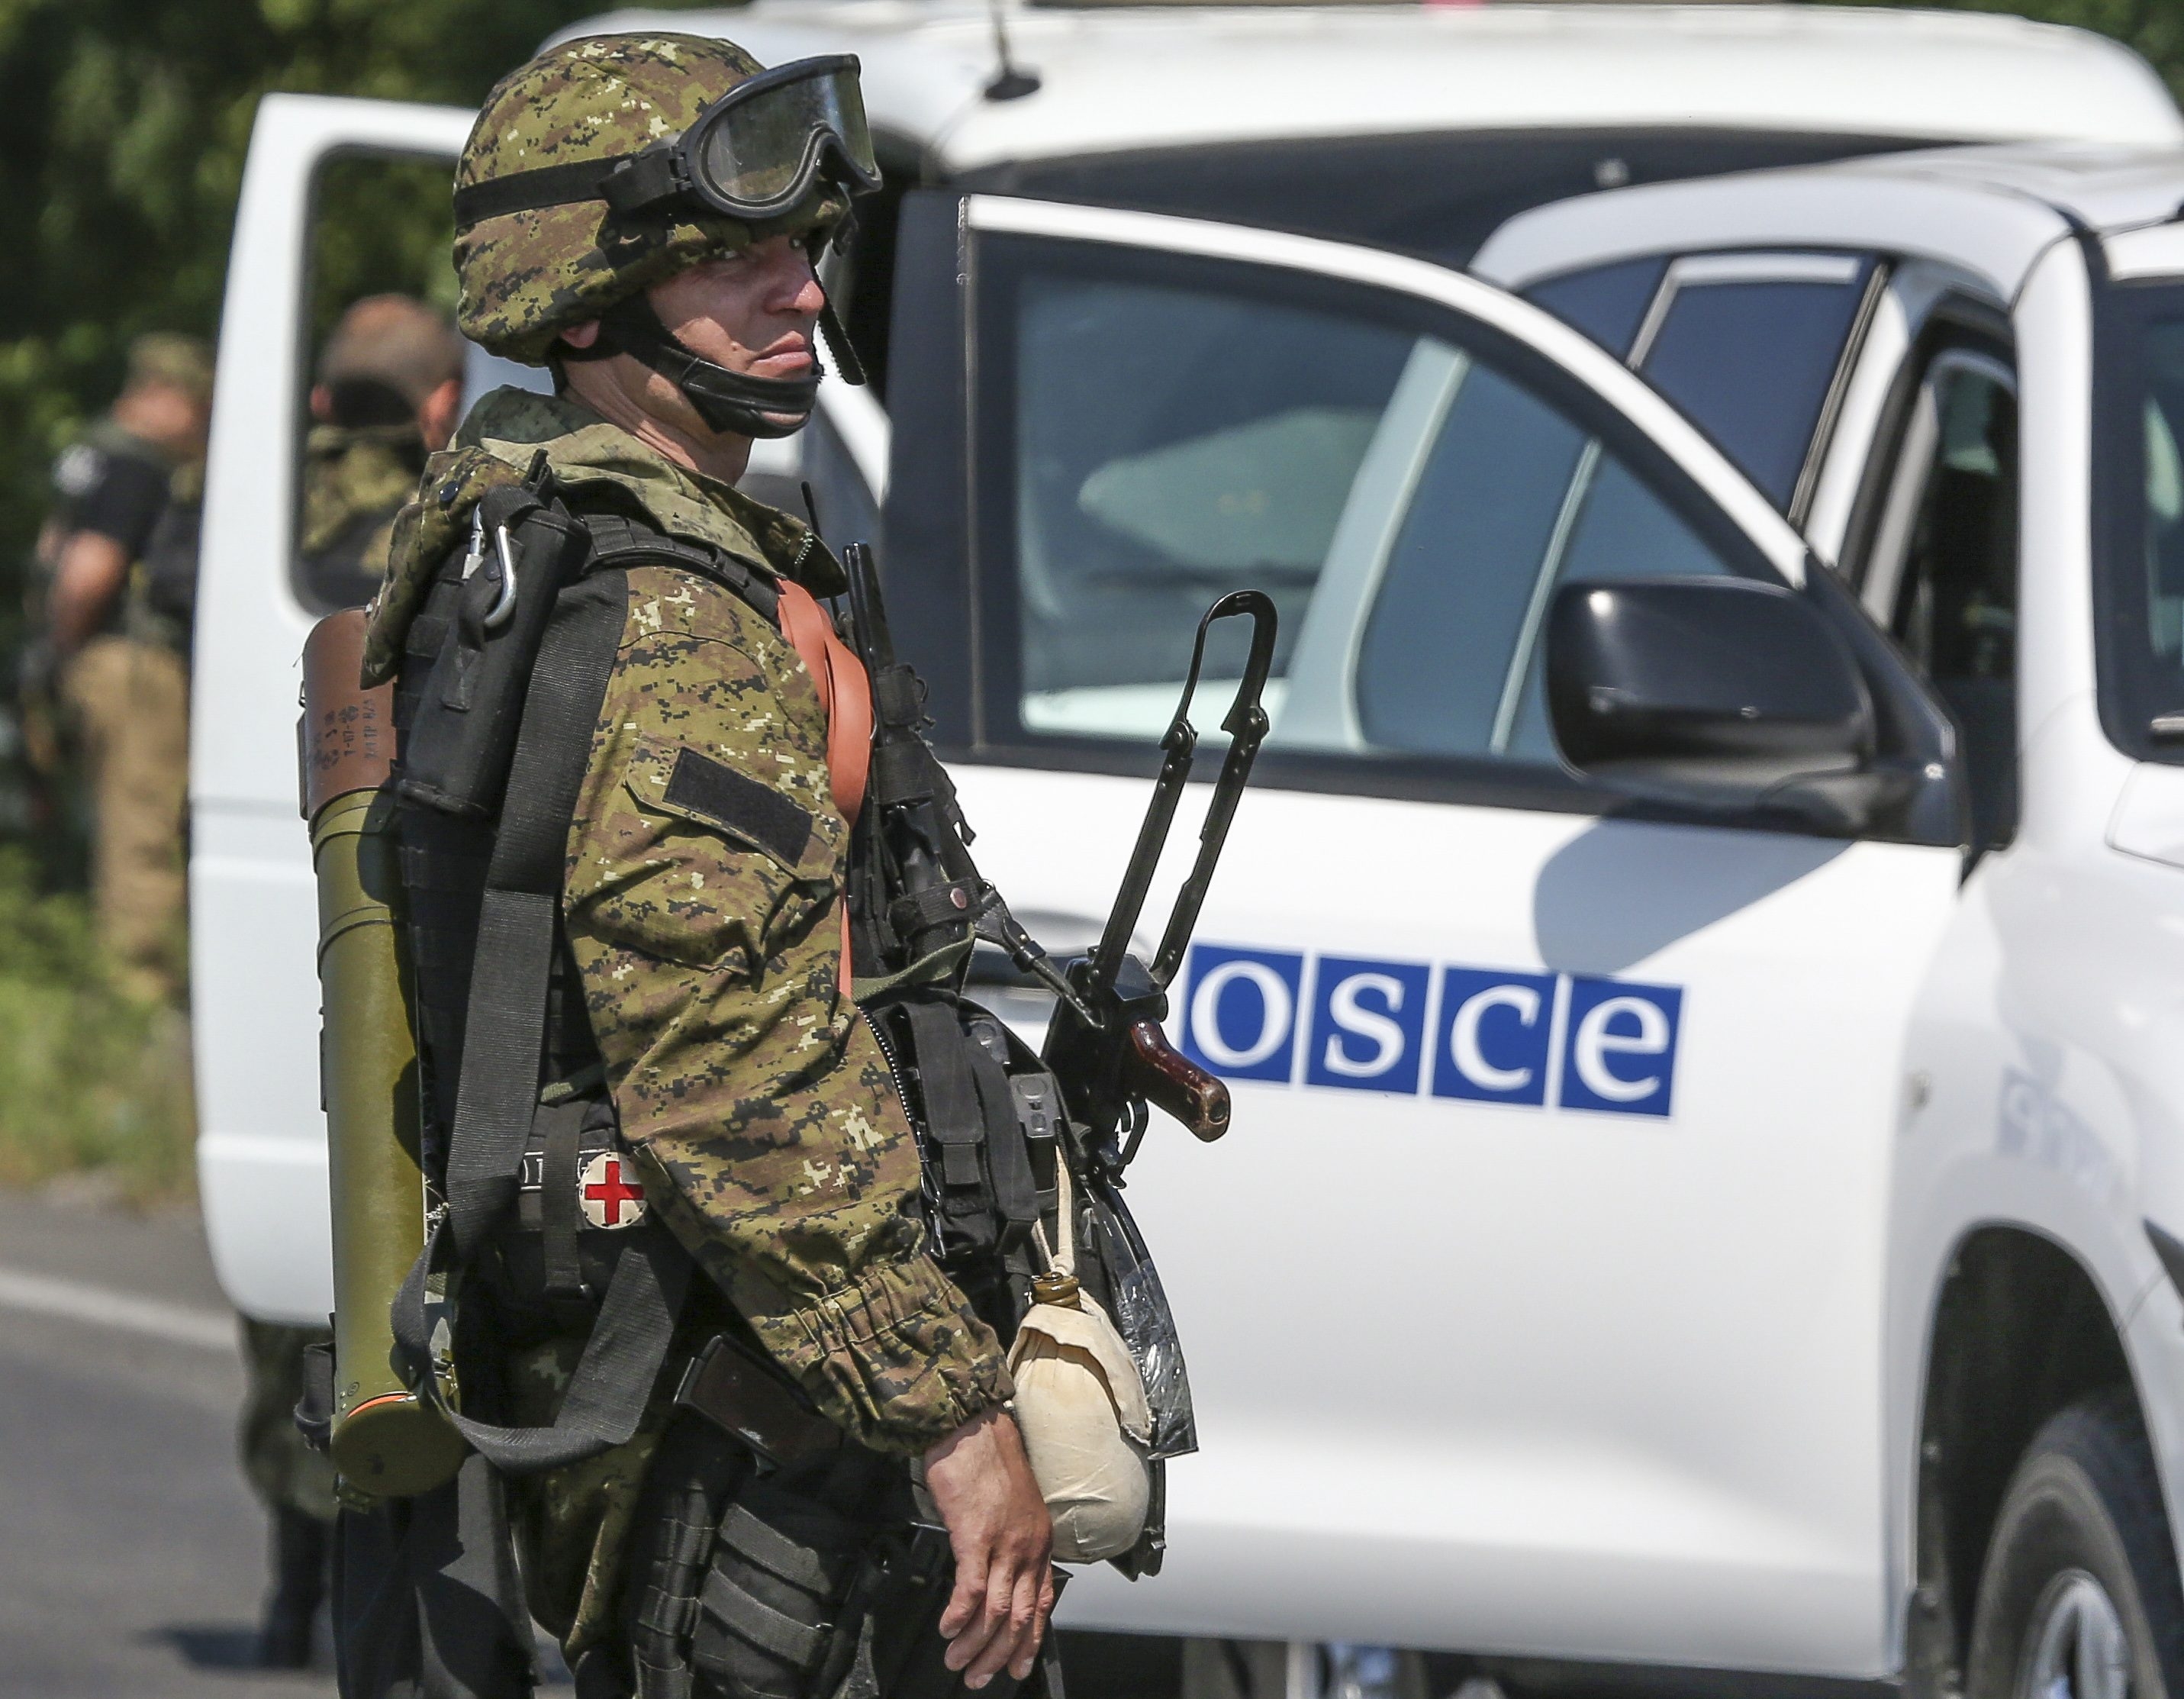 Киев негодует: полицейская миссия ОБСЕ на Донбассе провалена